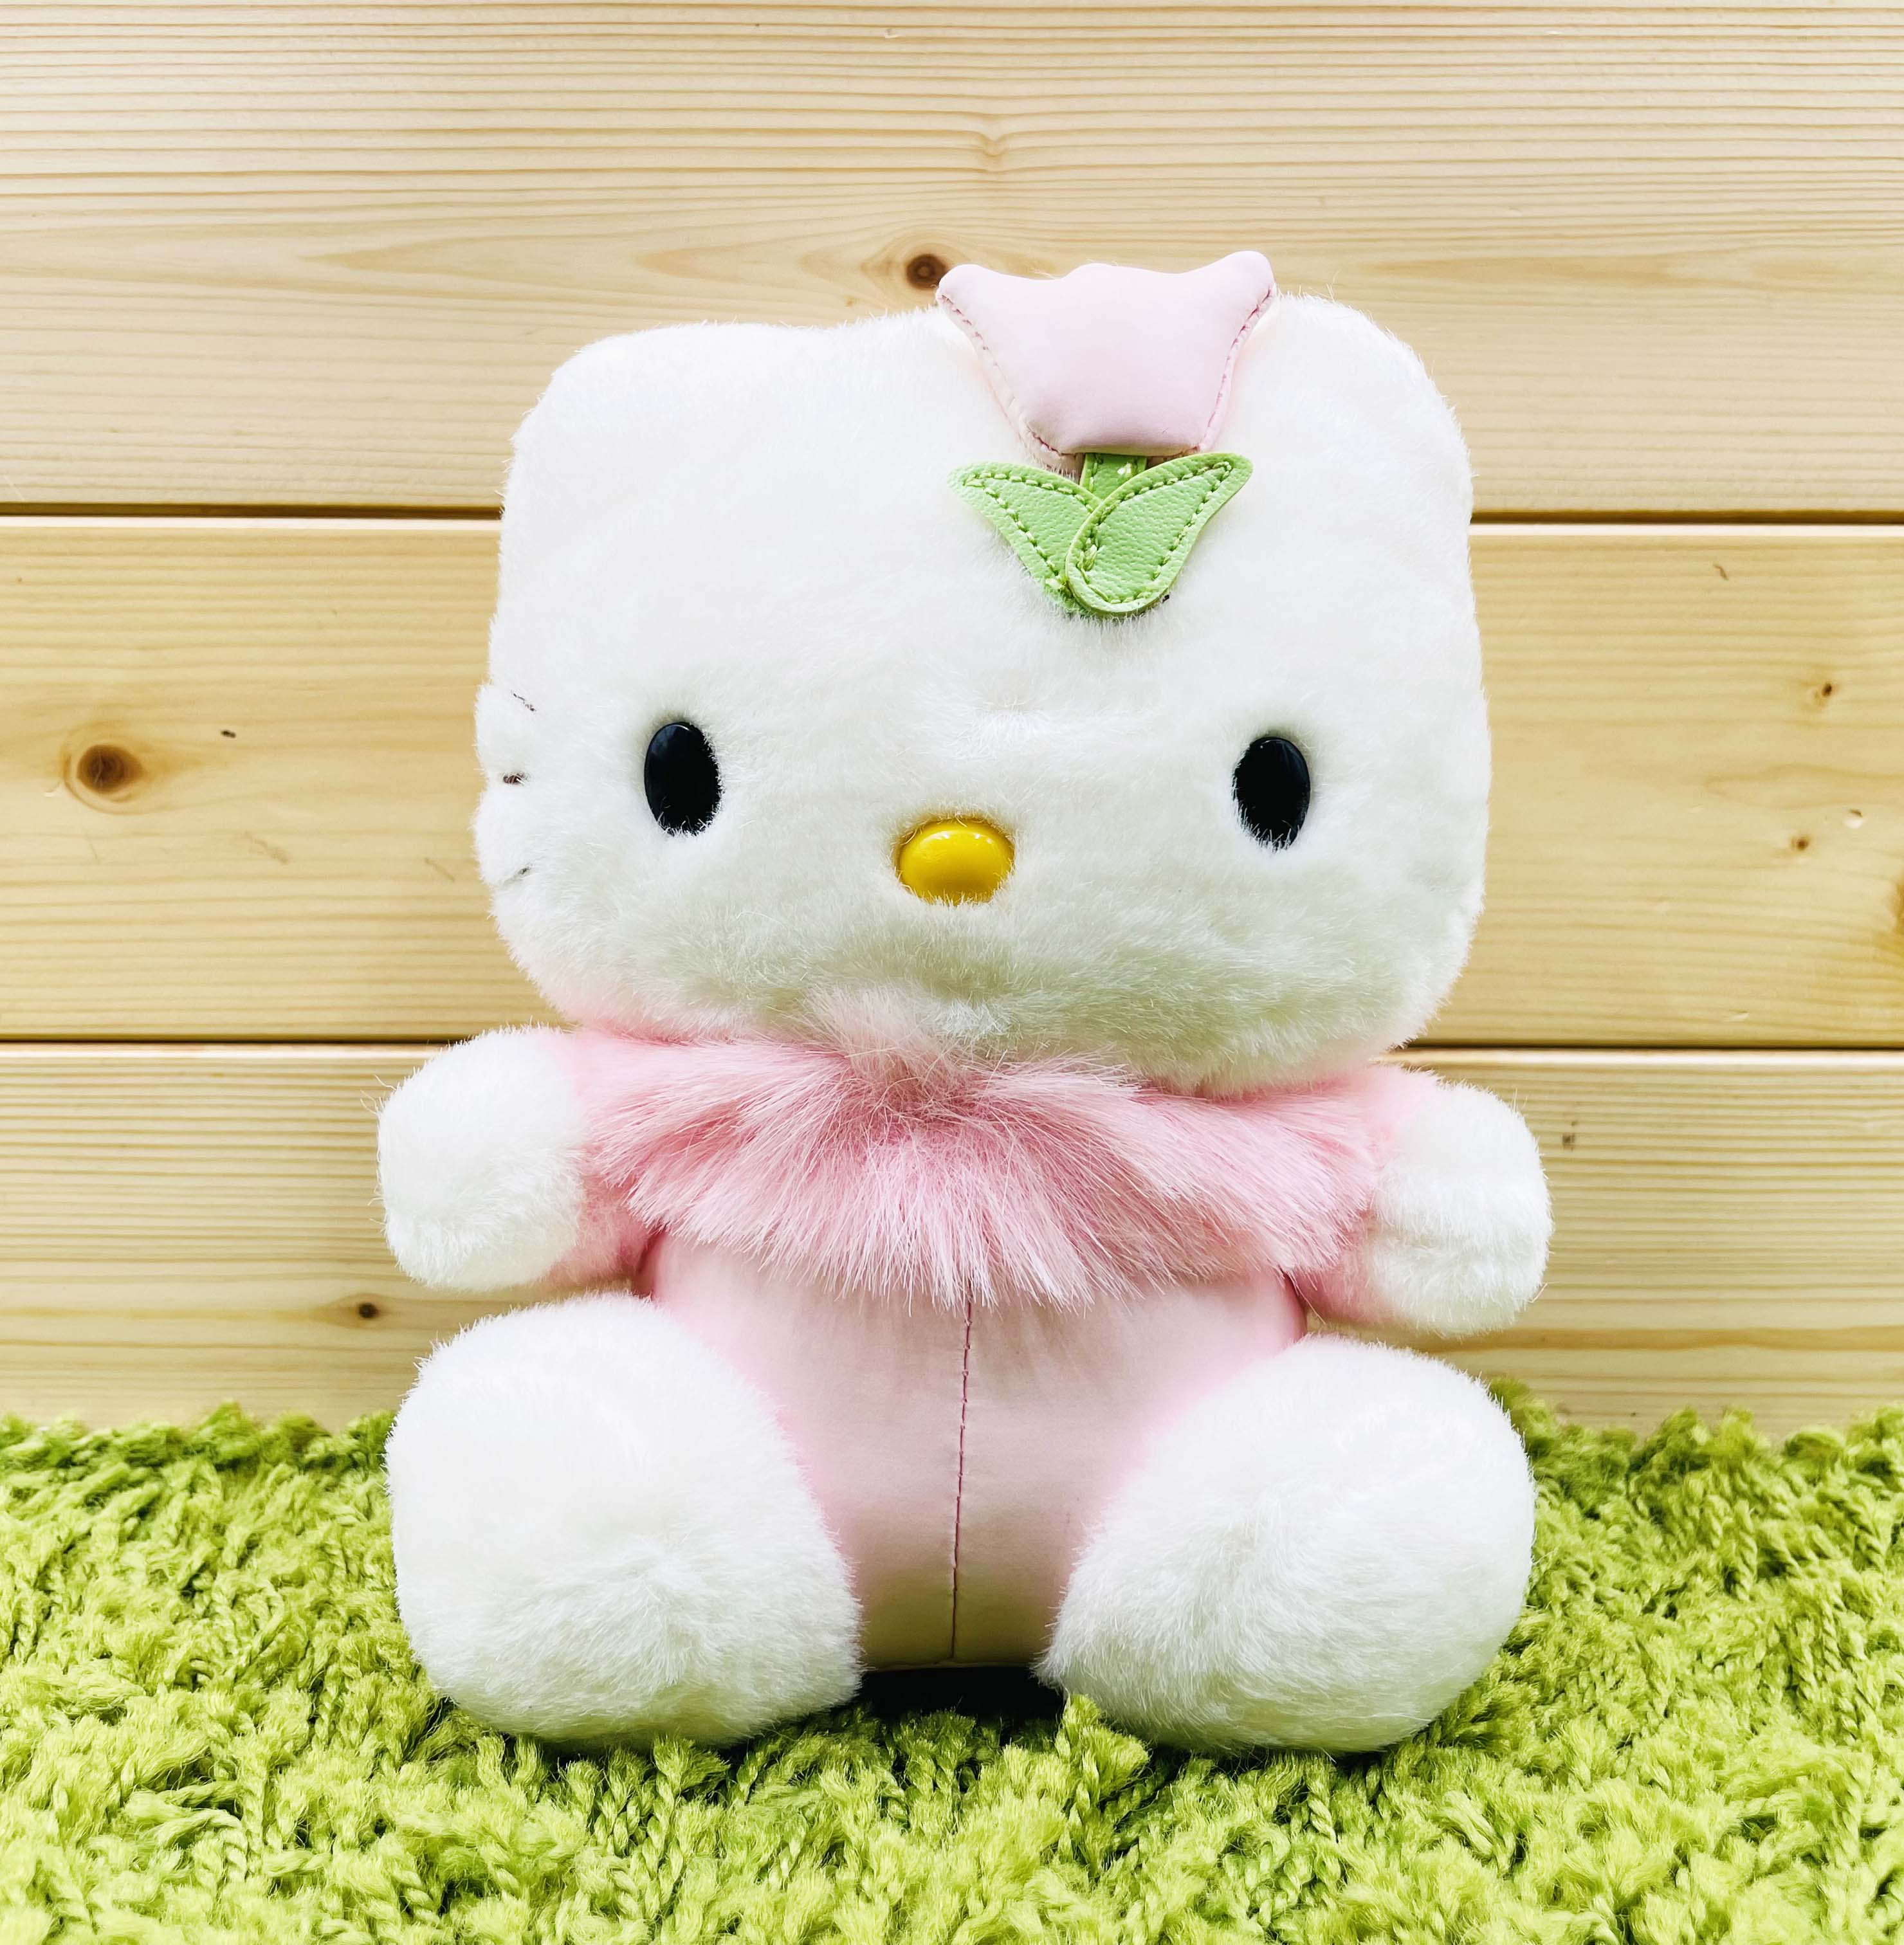 【震撼精品百貨】Hello Kitty 凱蒂貓~日本SANRIO三麗鷗 KITTY絨毛娃娃-金香*79901